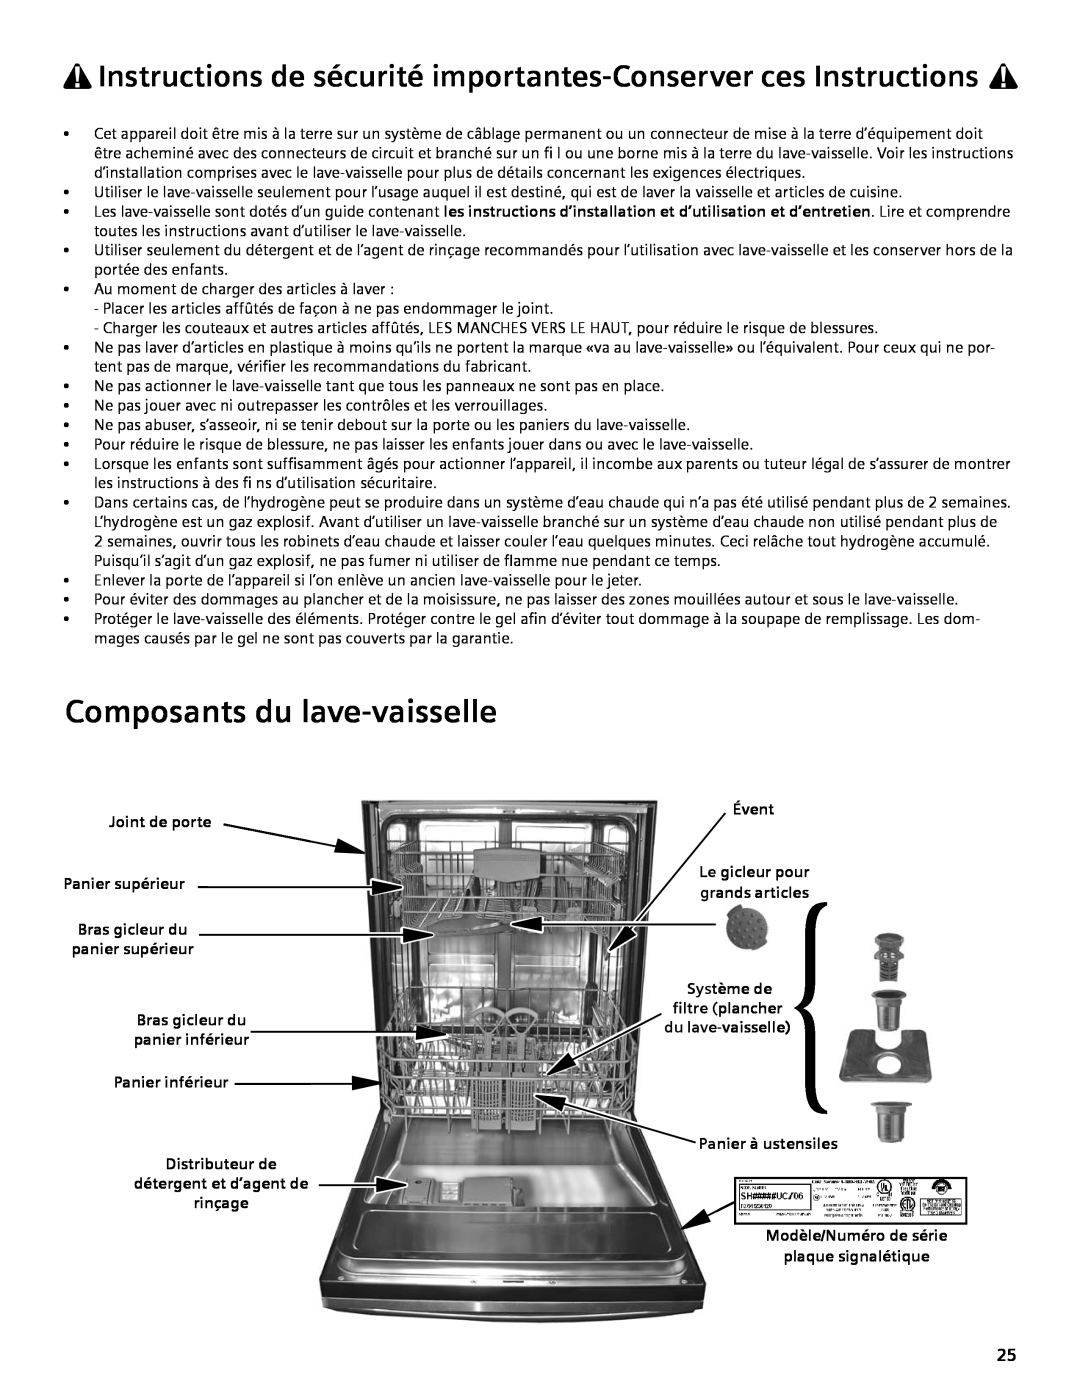 Bosch Appliances SGV45E03UC Composants du lave-vaisselle, Joint de porte Panier supérieur Bras gicleur du panier supérieur 